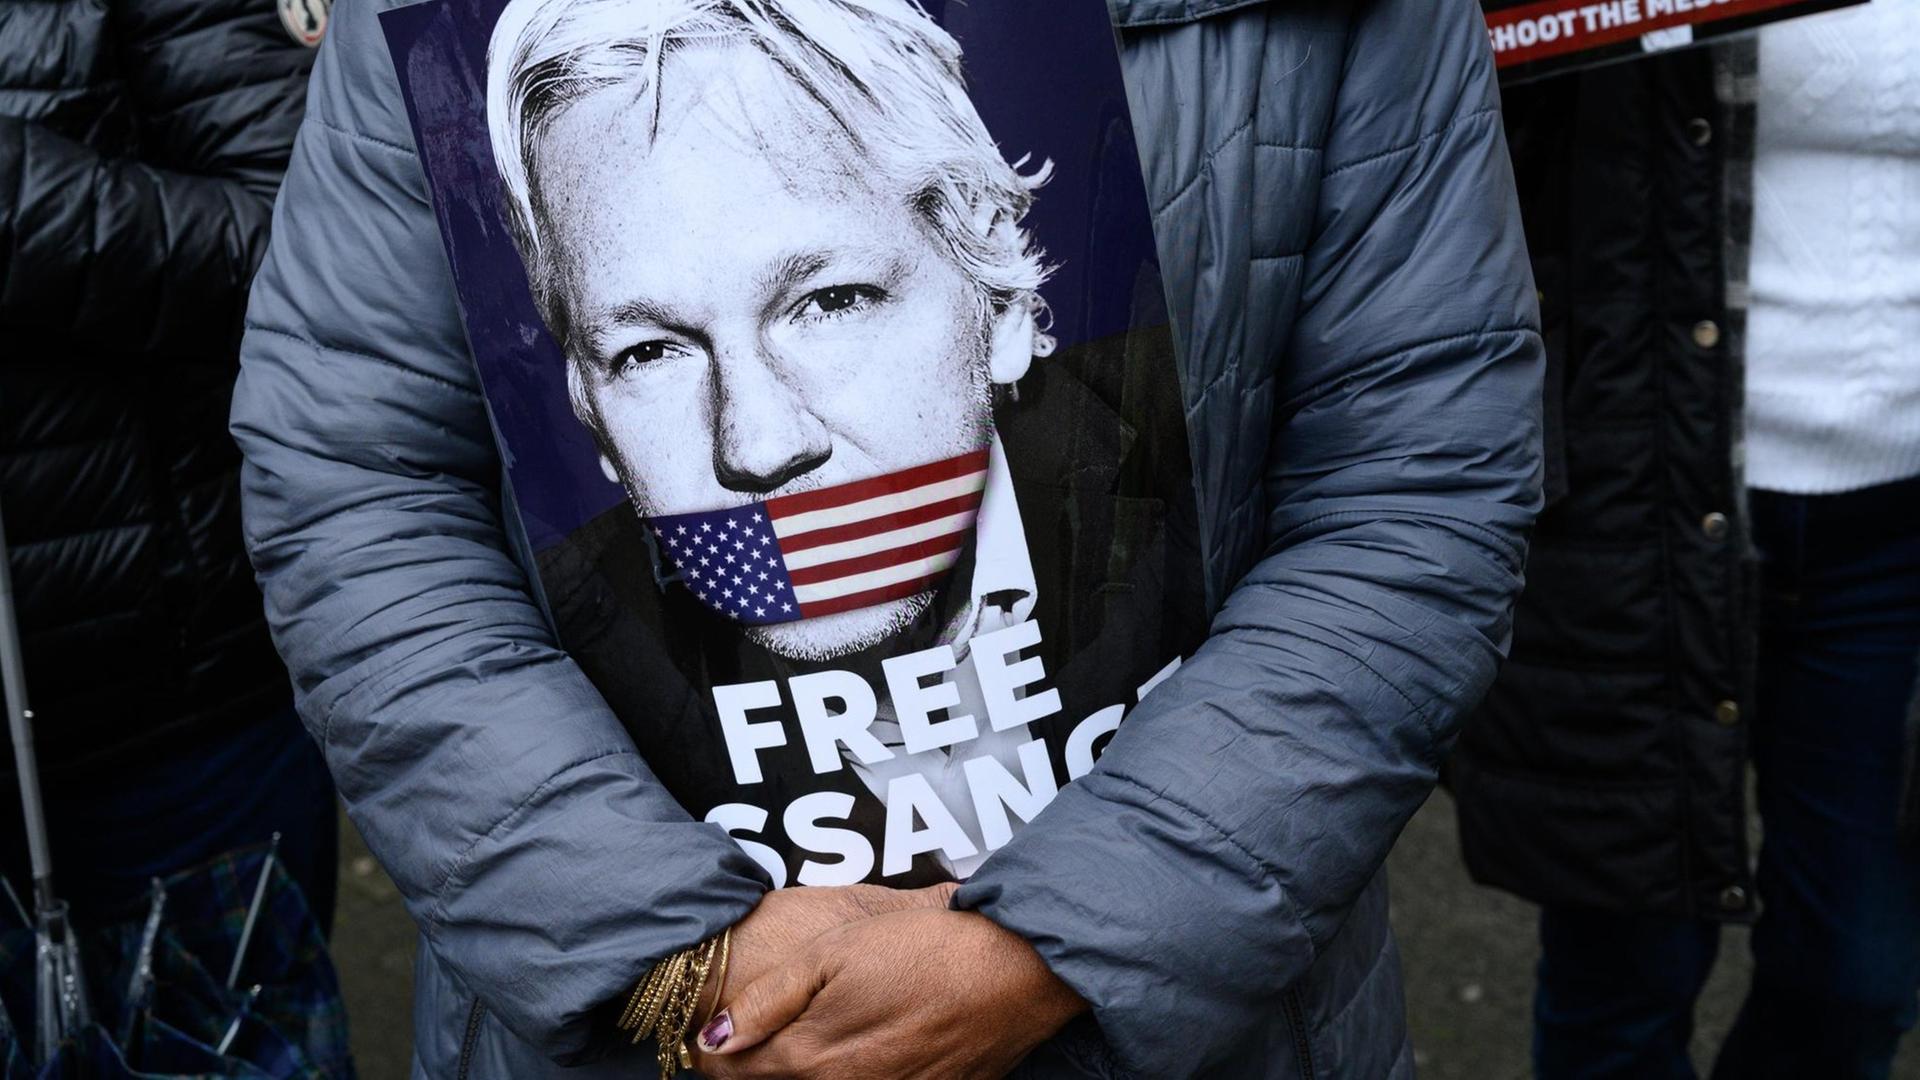 Eine Unterstützerin von Julian Assange hält vor ihrer Brust ein Schild, auf dem das Gesicht von Assange zu sehen ist. Der Mund von Assange ist auf dem Bild mit einer US-amerikanischen Flagge zugeklebt. Darunter steht auf dem Plakat "Free Assange" ("Befreit Assange").